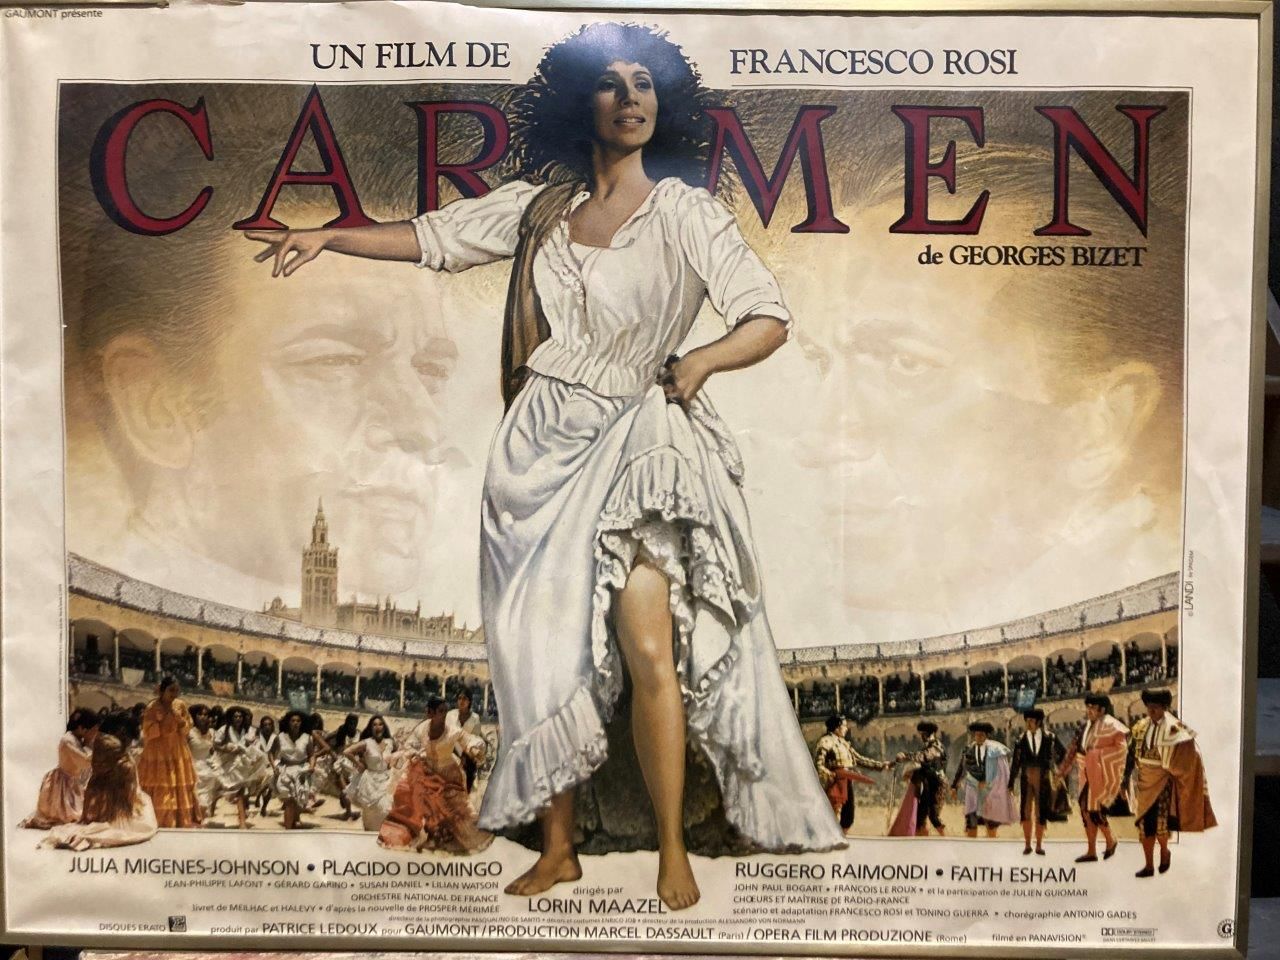 Fransceso Rosi CARMEN

Filmplakat

59 x 79 cm gerahmt